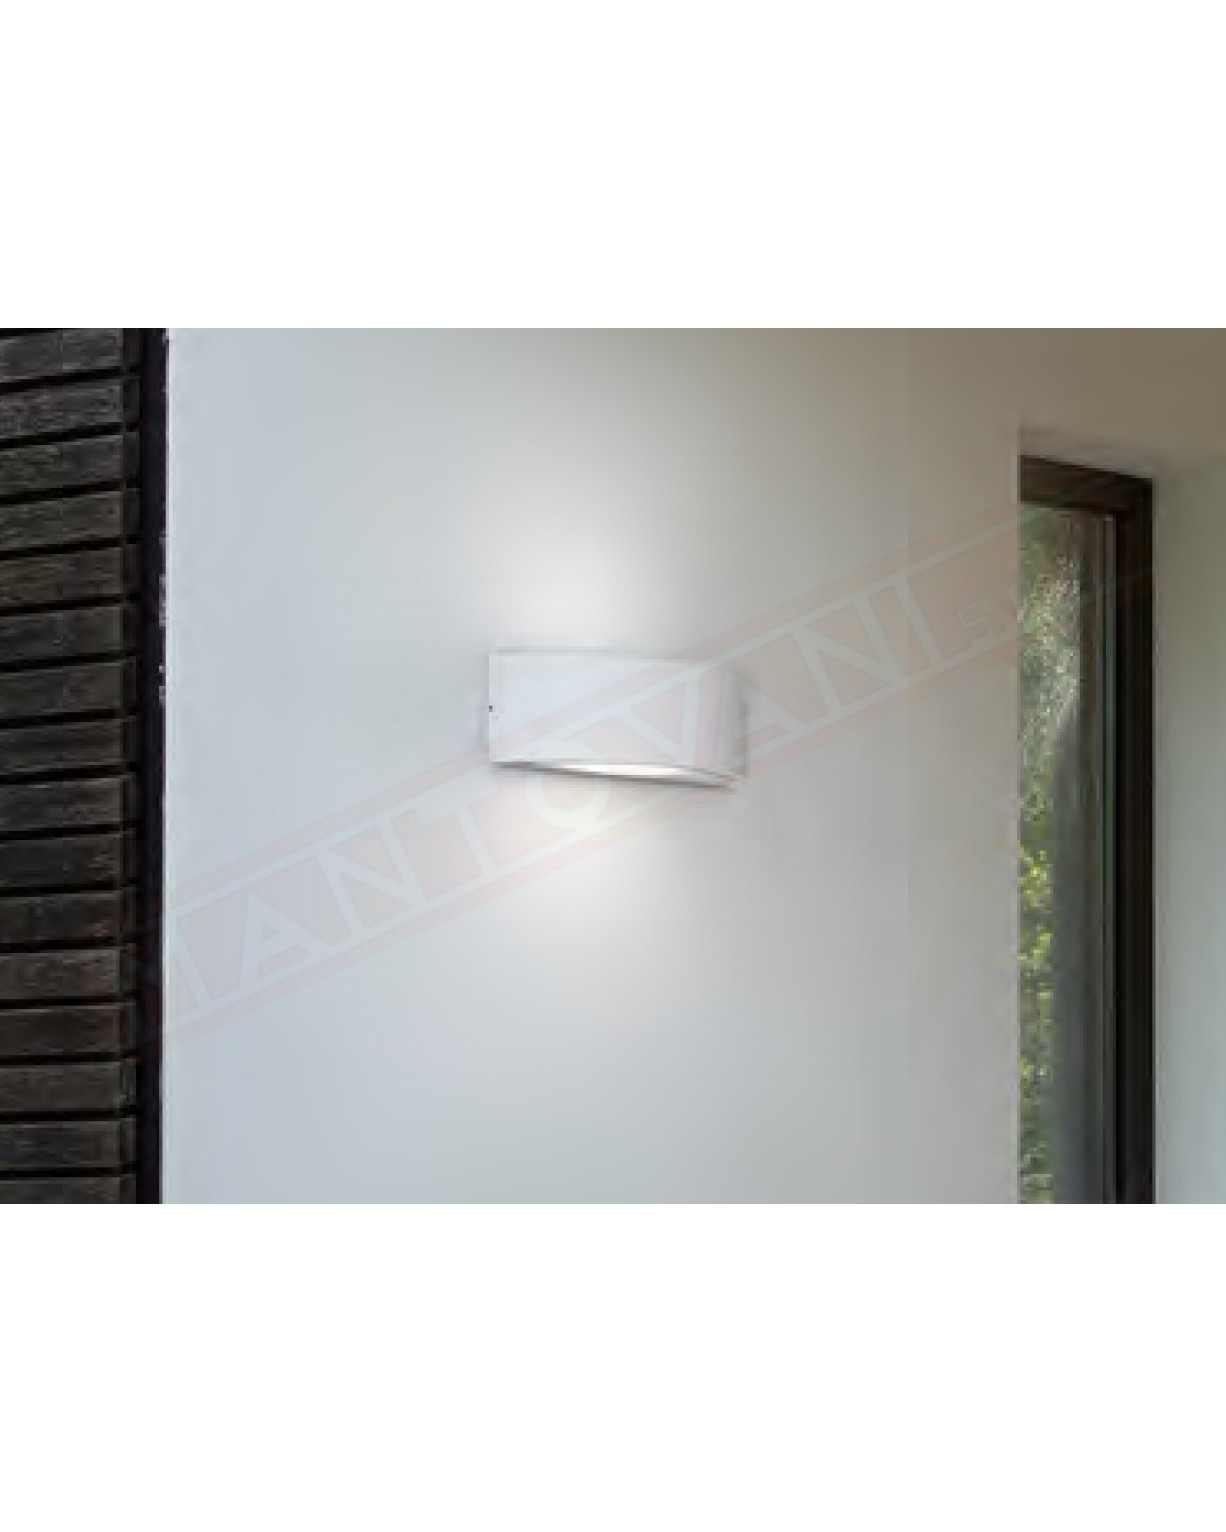 Lampada a parete per esterni ip54 in alluminio bianco cm 26x10x8 1xe27 F.P